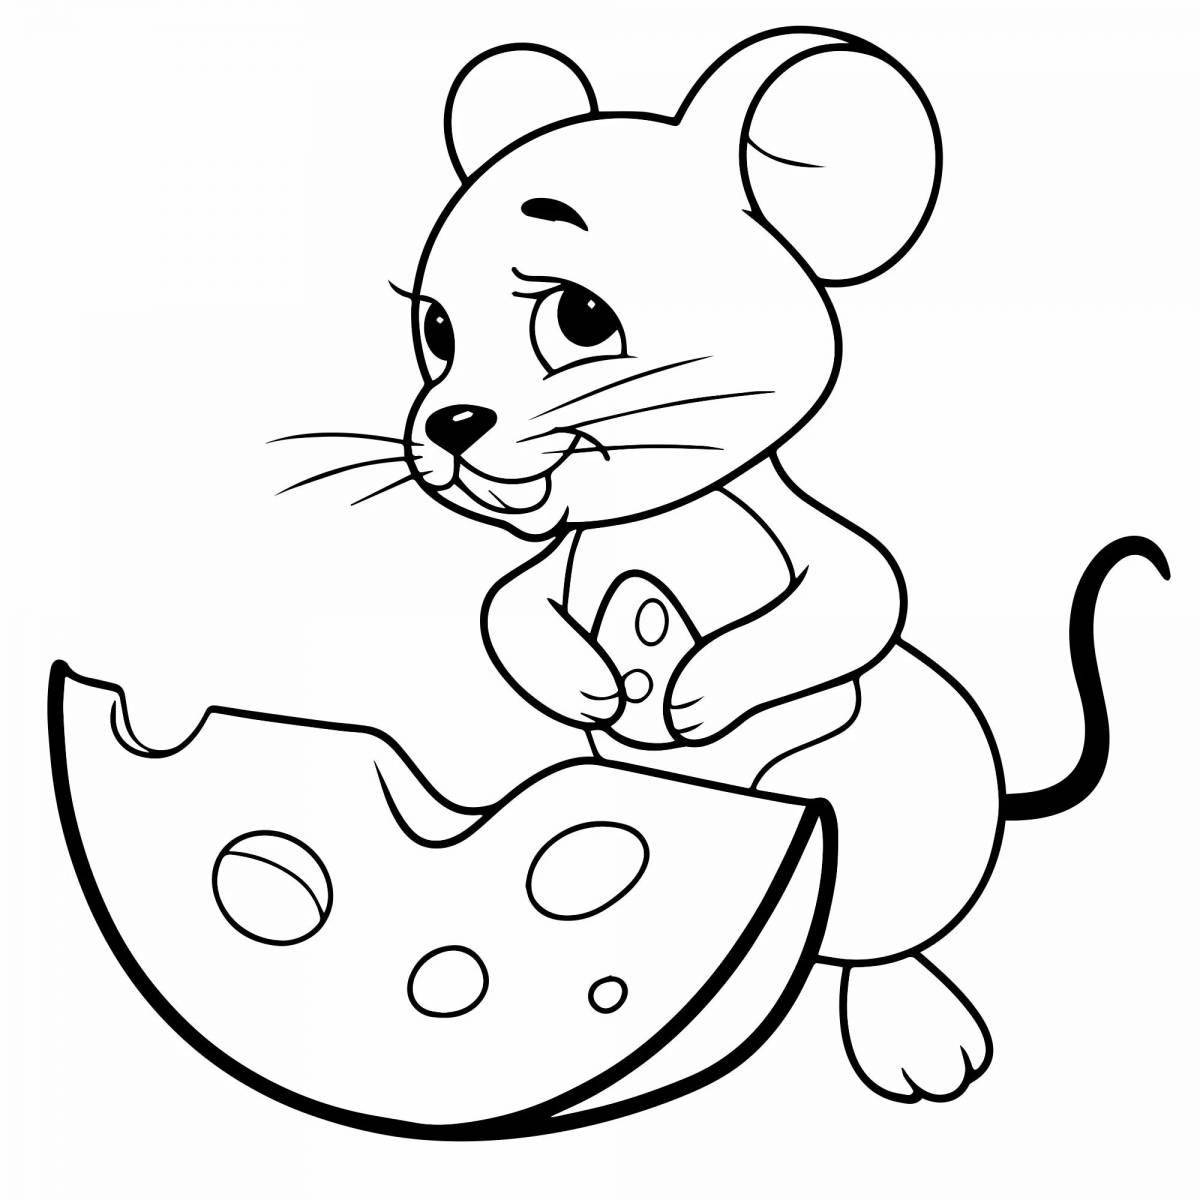 Веселая раскраска с мышью для детей 4-5 лет